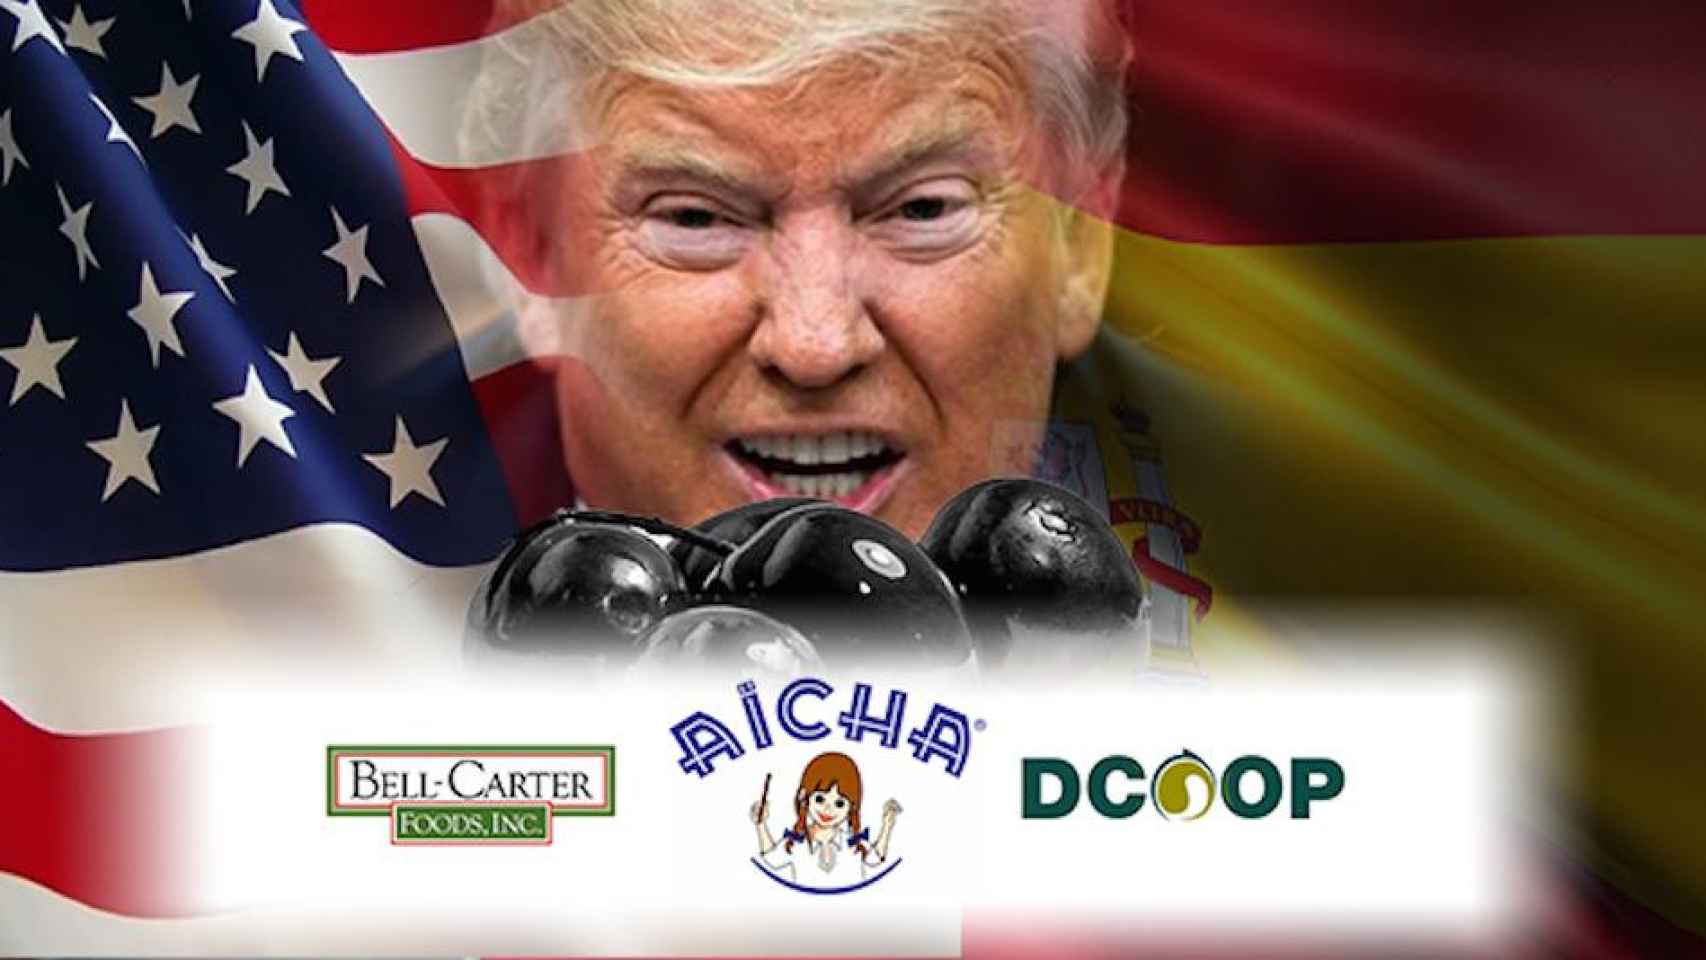 Fotomontaje de Donald Trump con el logo de Dcoop Alarma alianza aceite arancel